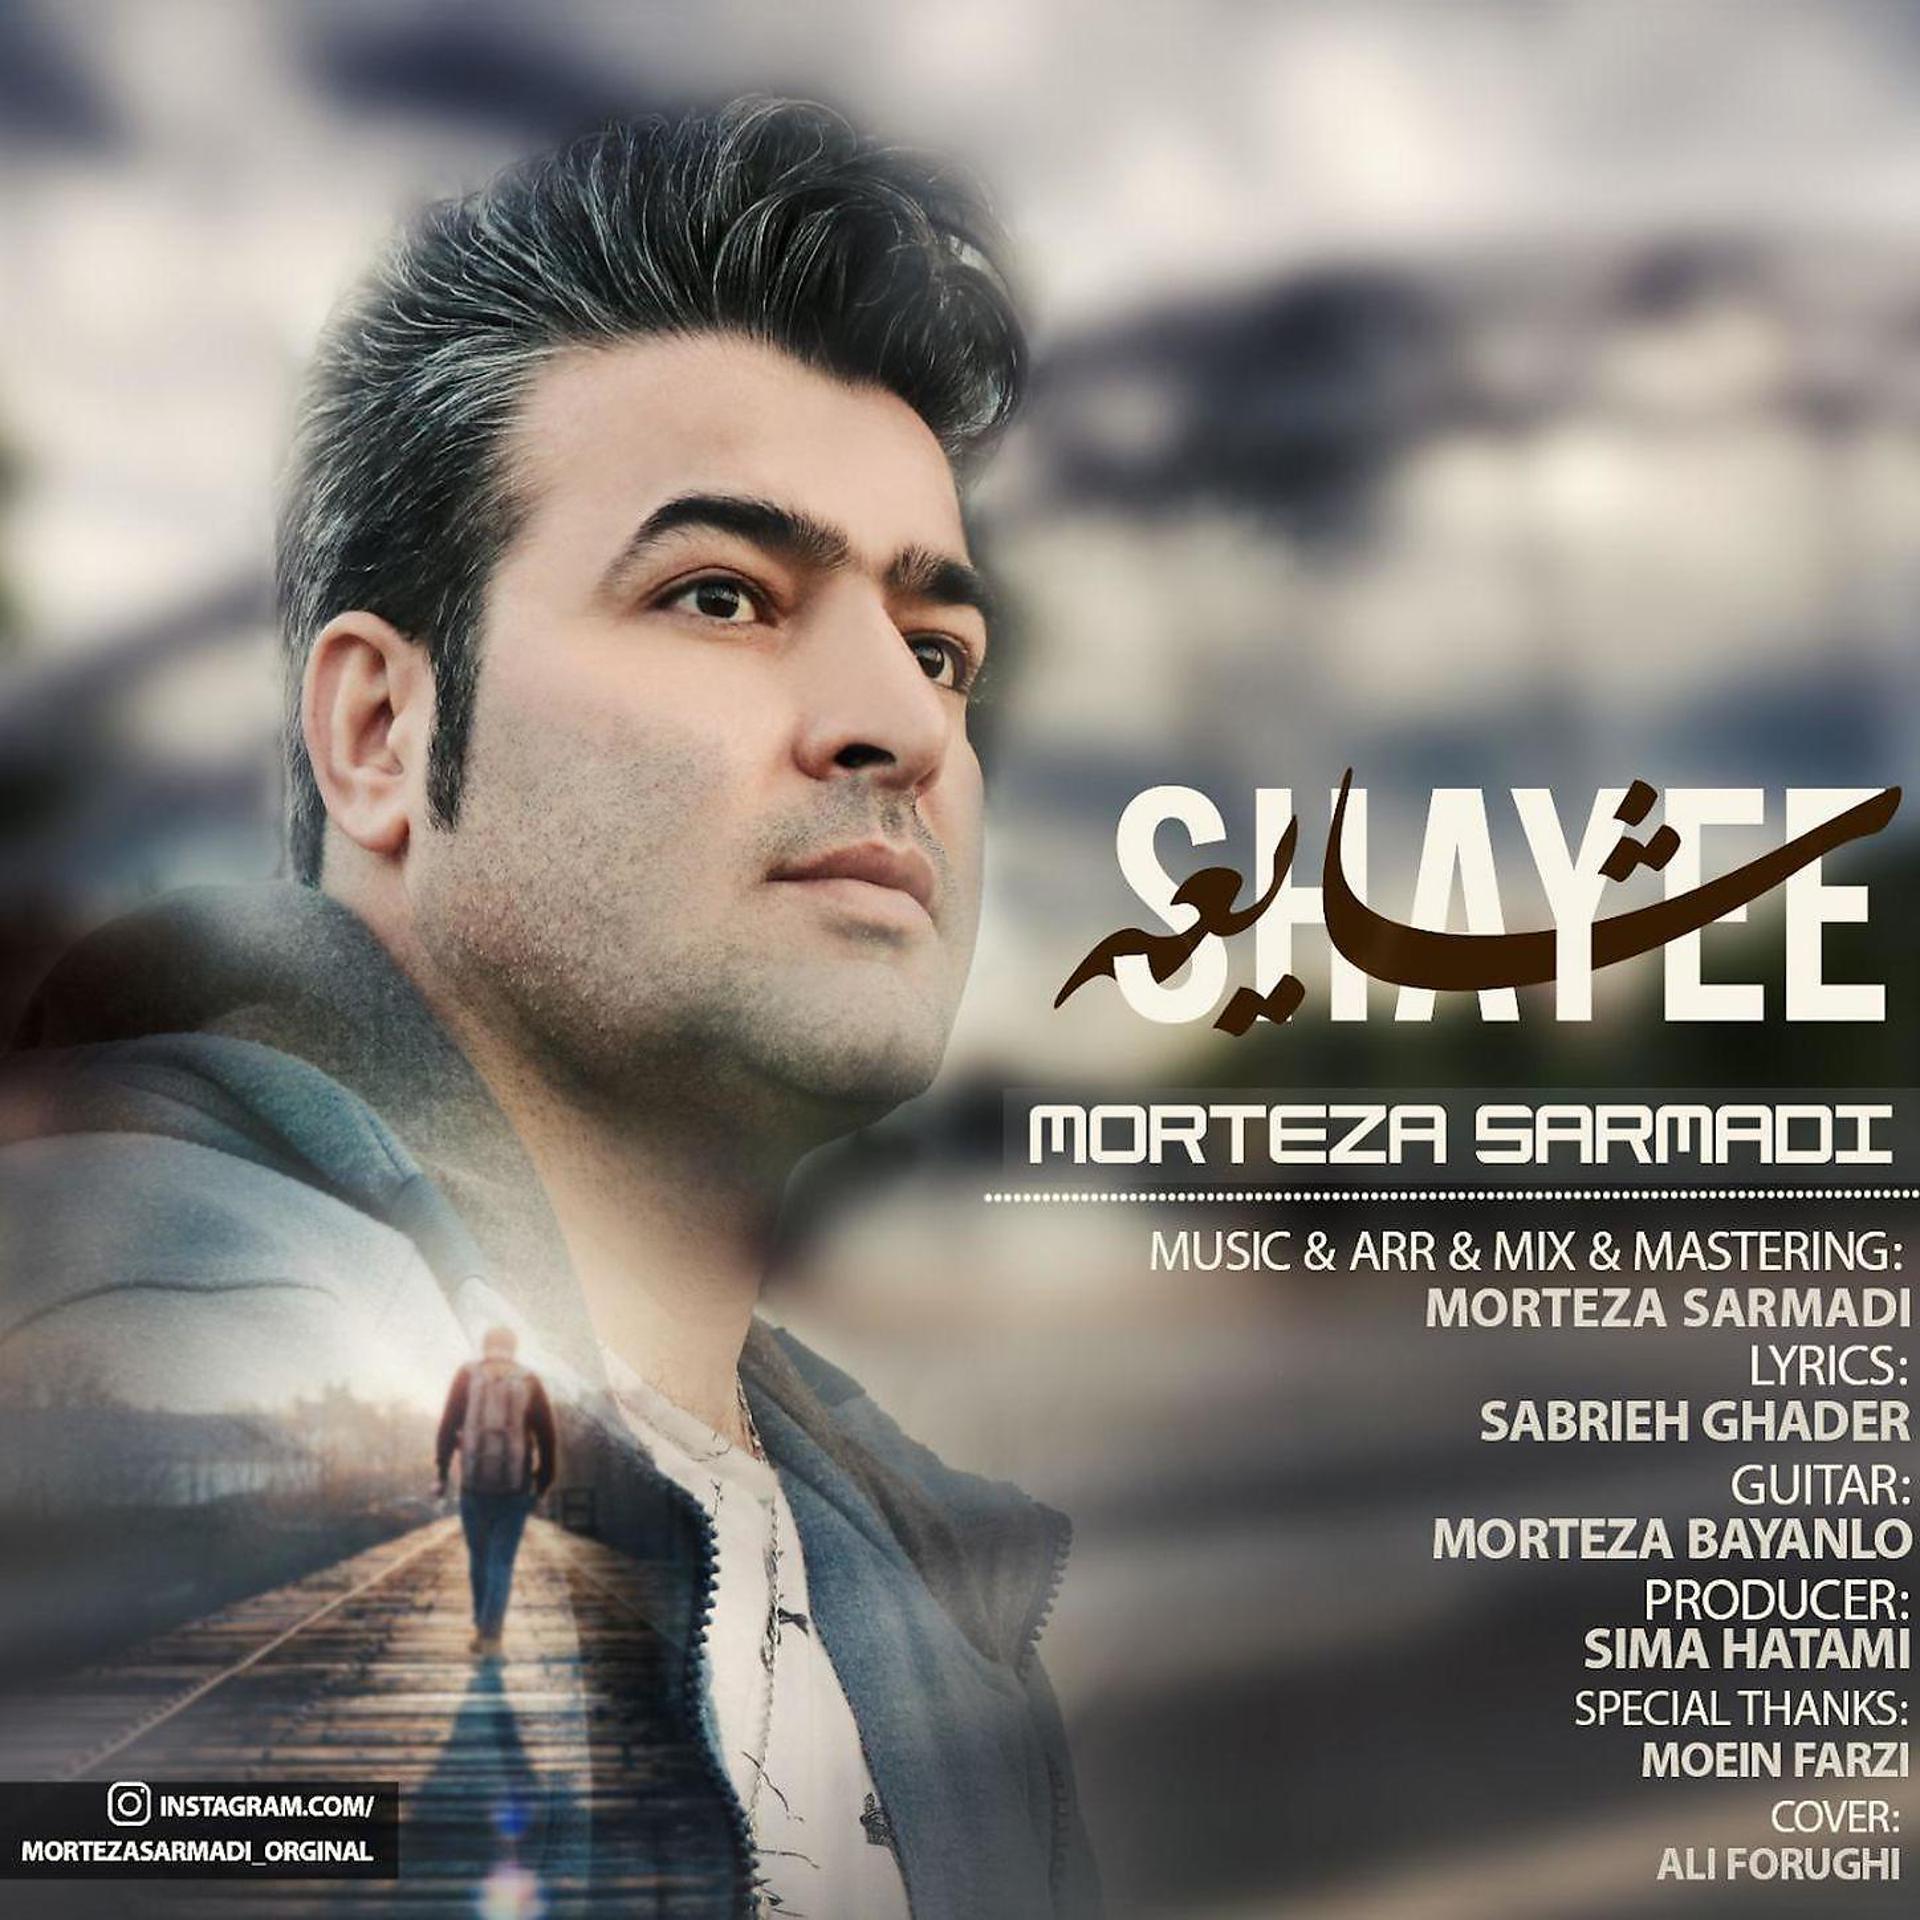 Постер к треку Morteza Sarmadi - Shayee